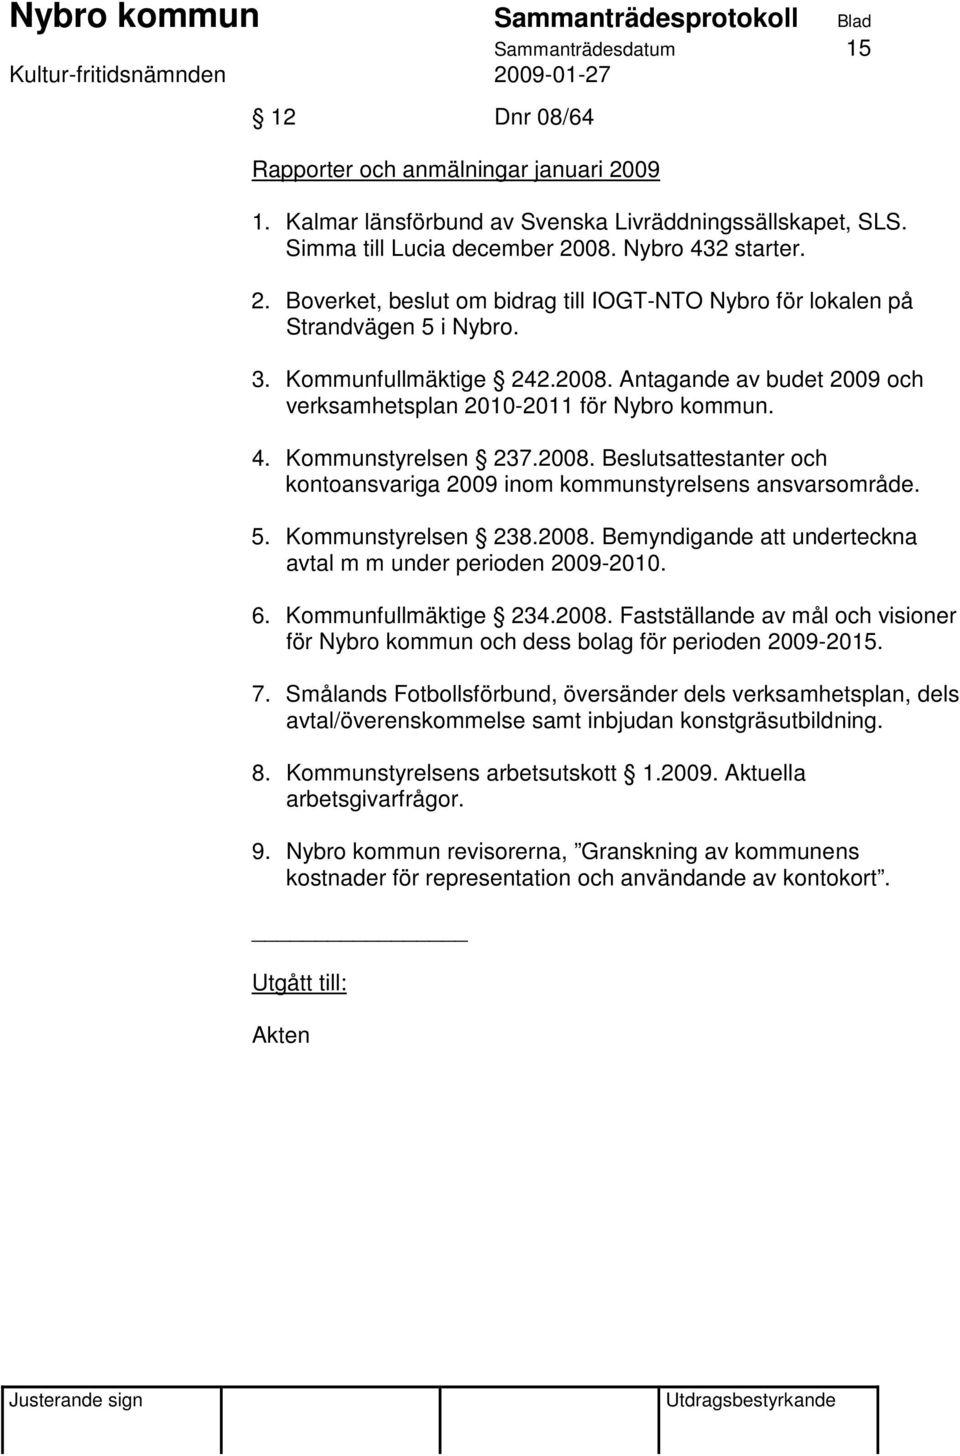 5. Kommunstyrelsen 238.2008. Bemyndigande att underteckna avtal m m under perioden 2009-2010. 6. Kommunfullmäktige 234.2008. Fastställande av mål och visioner för Nybro kommun och dess bolag för perioden 2009-2015.